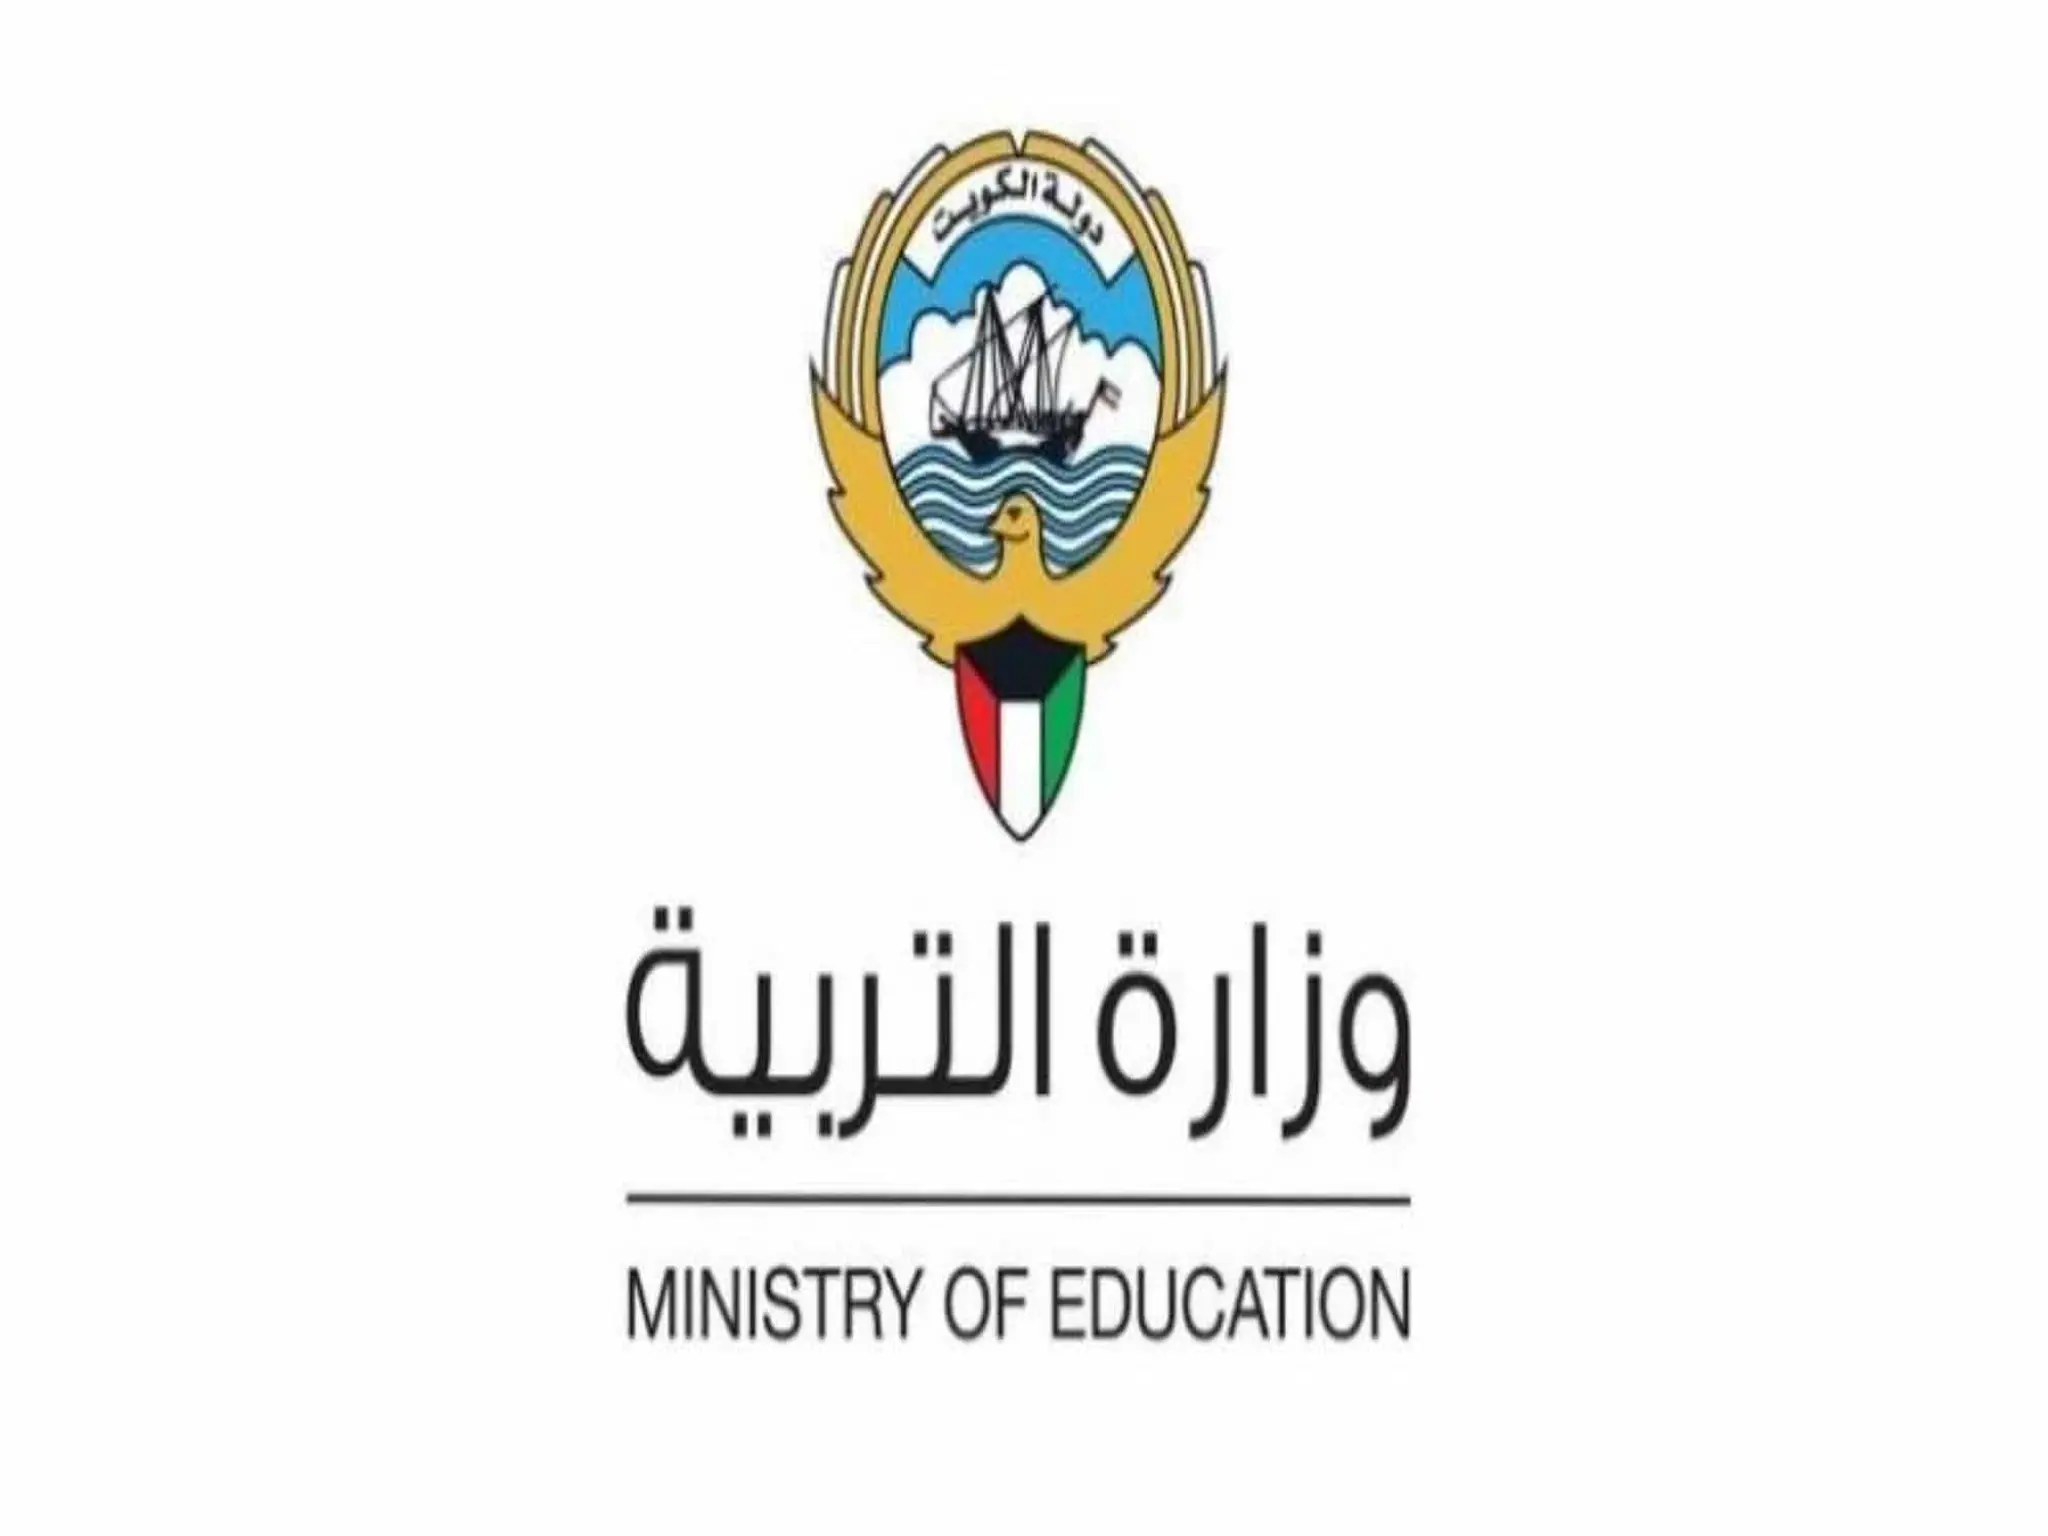 وزارة التربية والتعليم الكويتي تكشف عن لائحة النظام الدراسى الجديدة